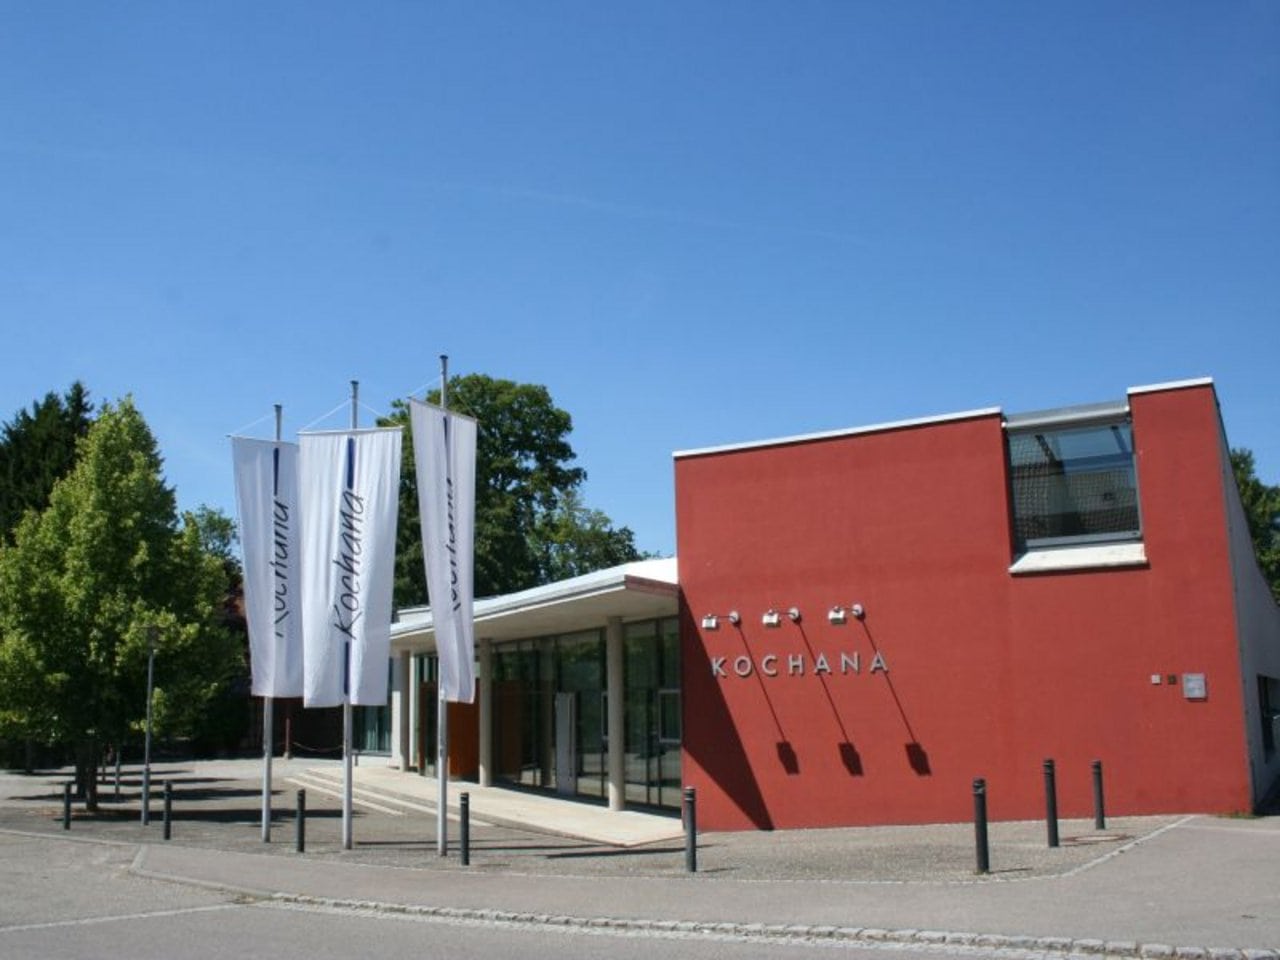 Modernes Festhallengebäude mit Flaggen und der Aufschrift „kochana“ an der Fassade unter einem strahlend blauen Himmel.